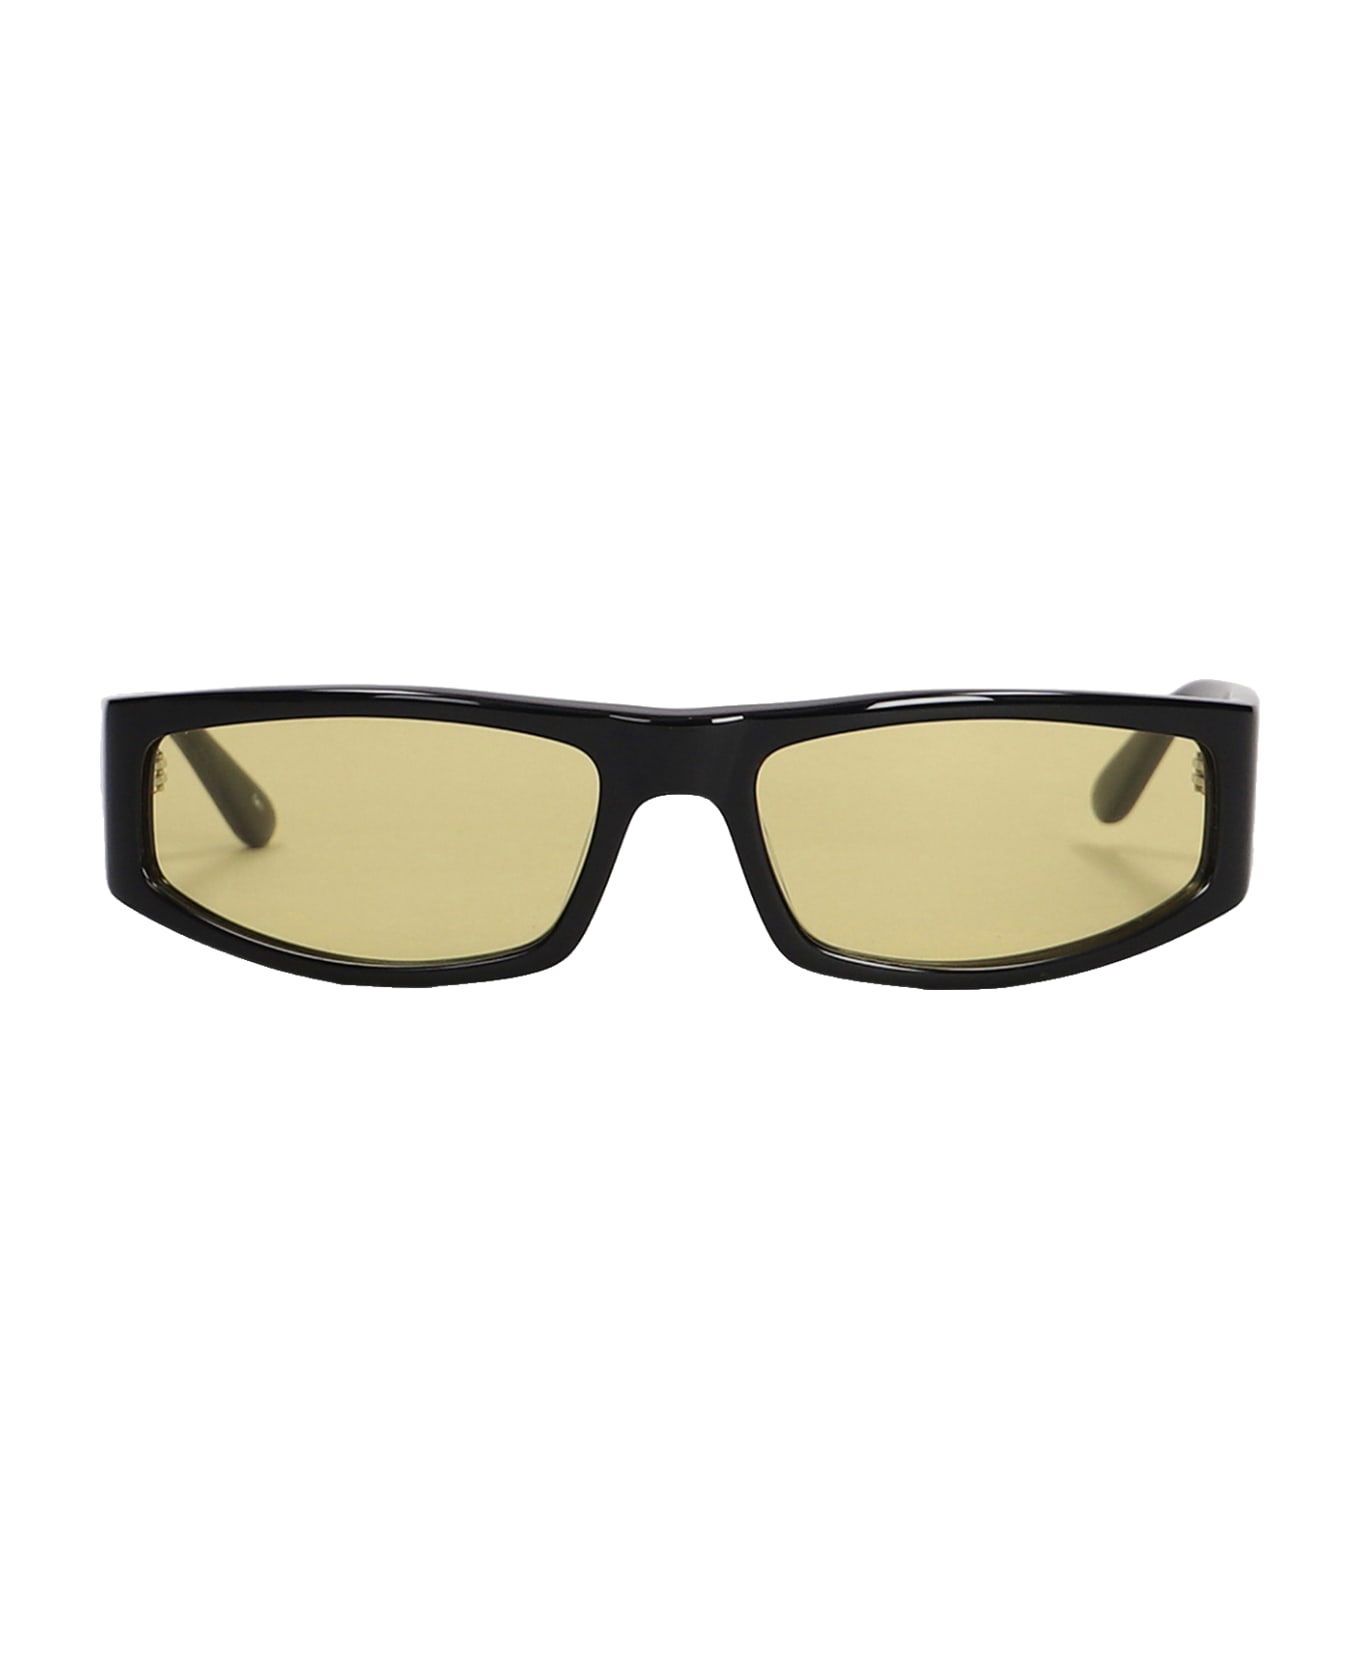 Courrèges Sunglasses In Black Acetate - black